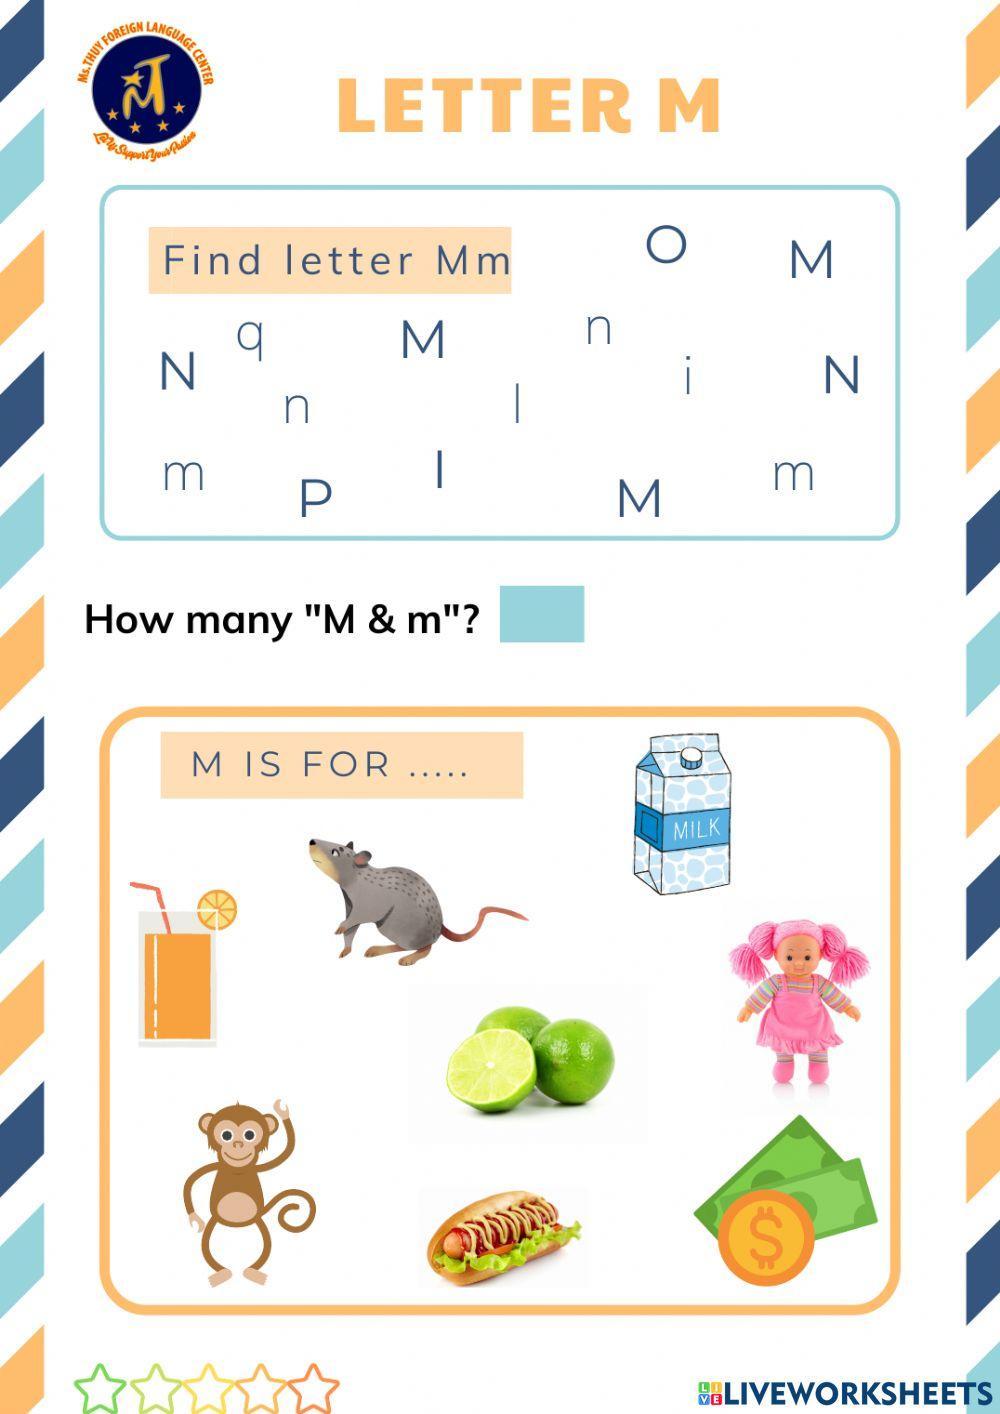 Find Letter Mm